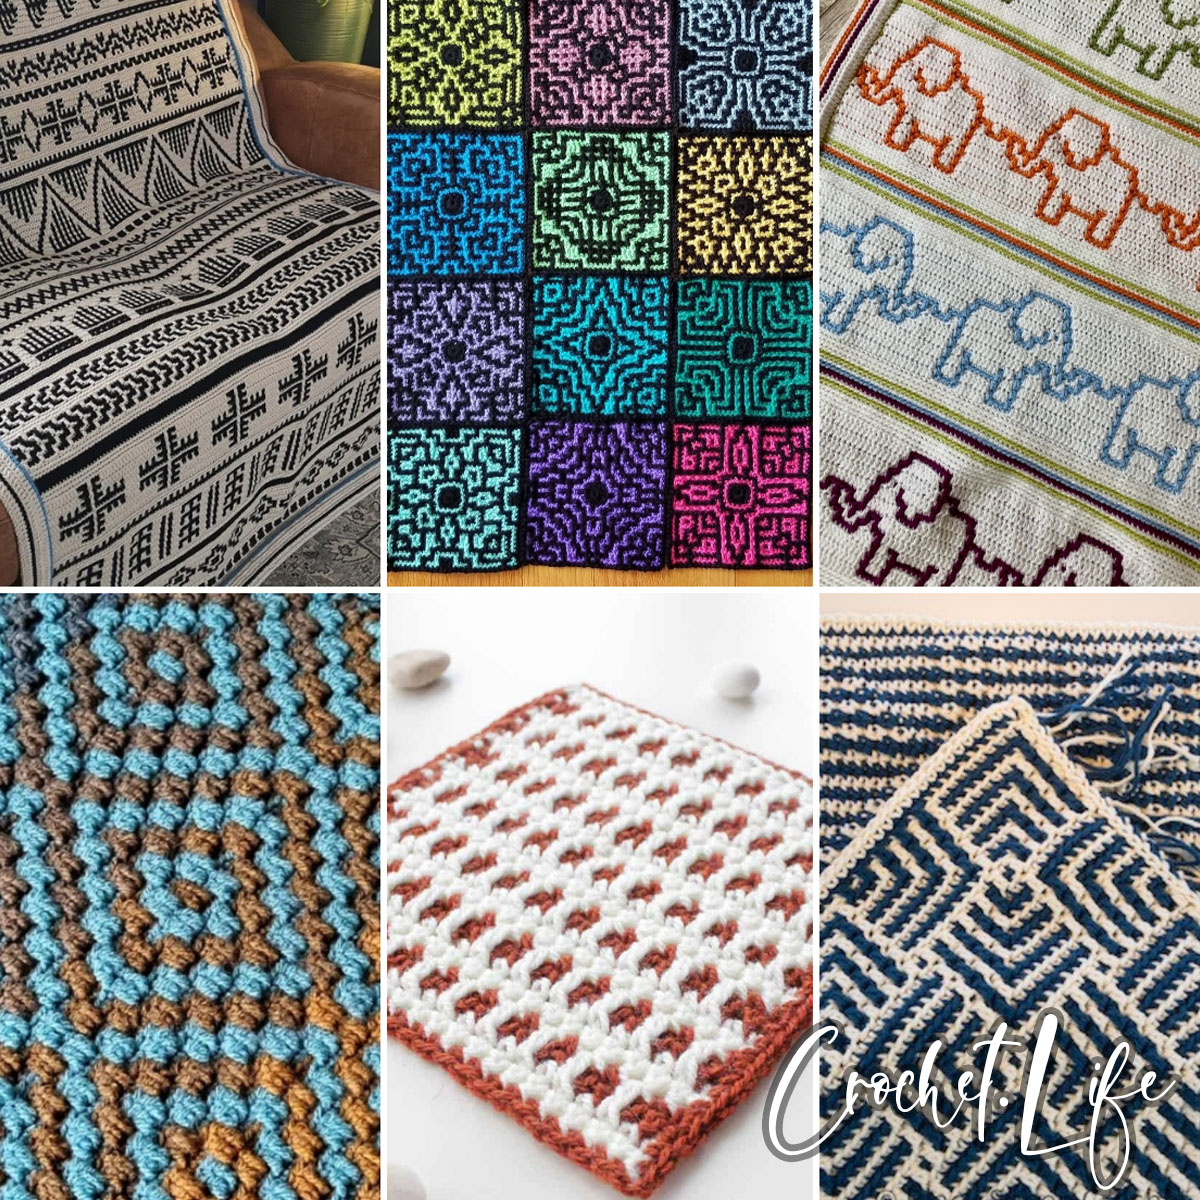 14 Beautiful Mosaic Crochet Patterns - Crochet Life